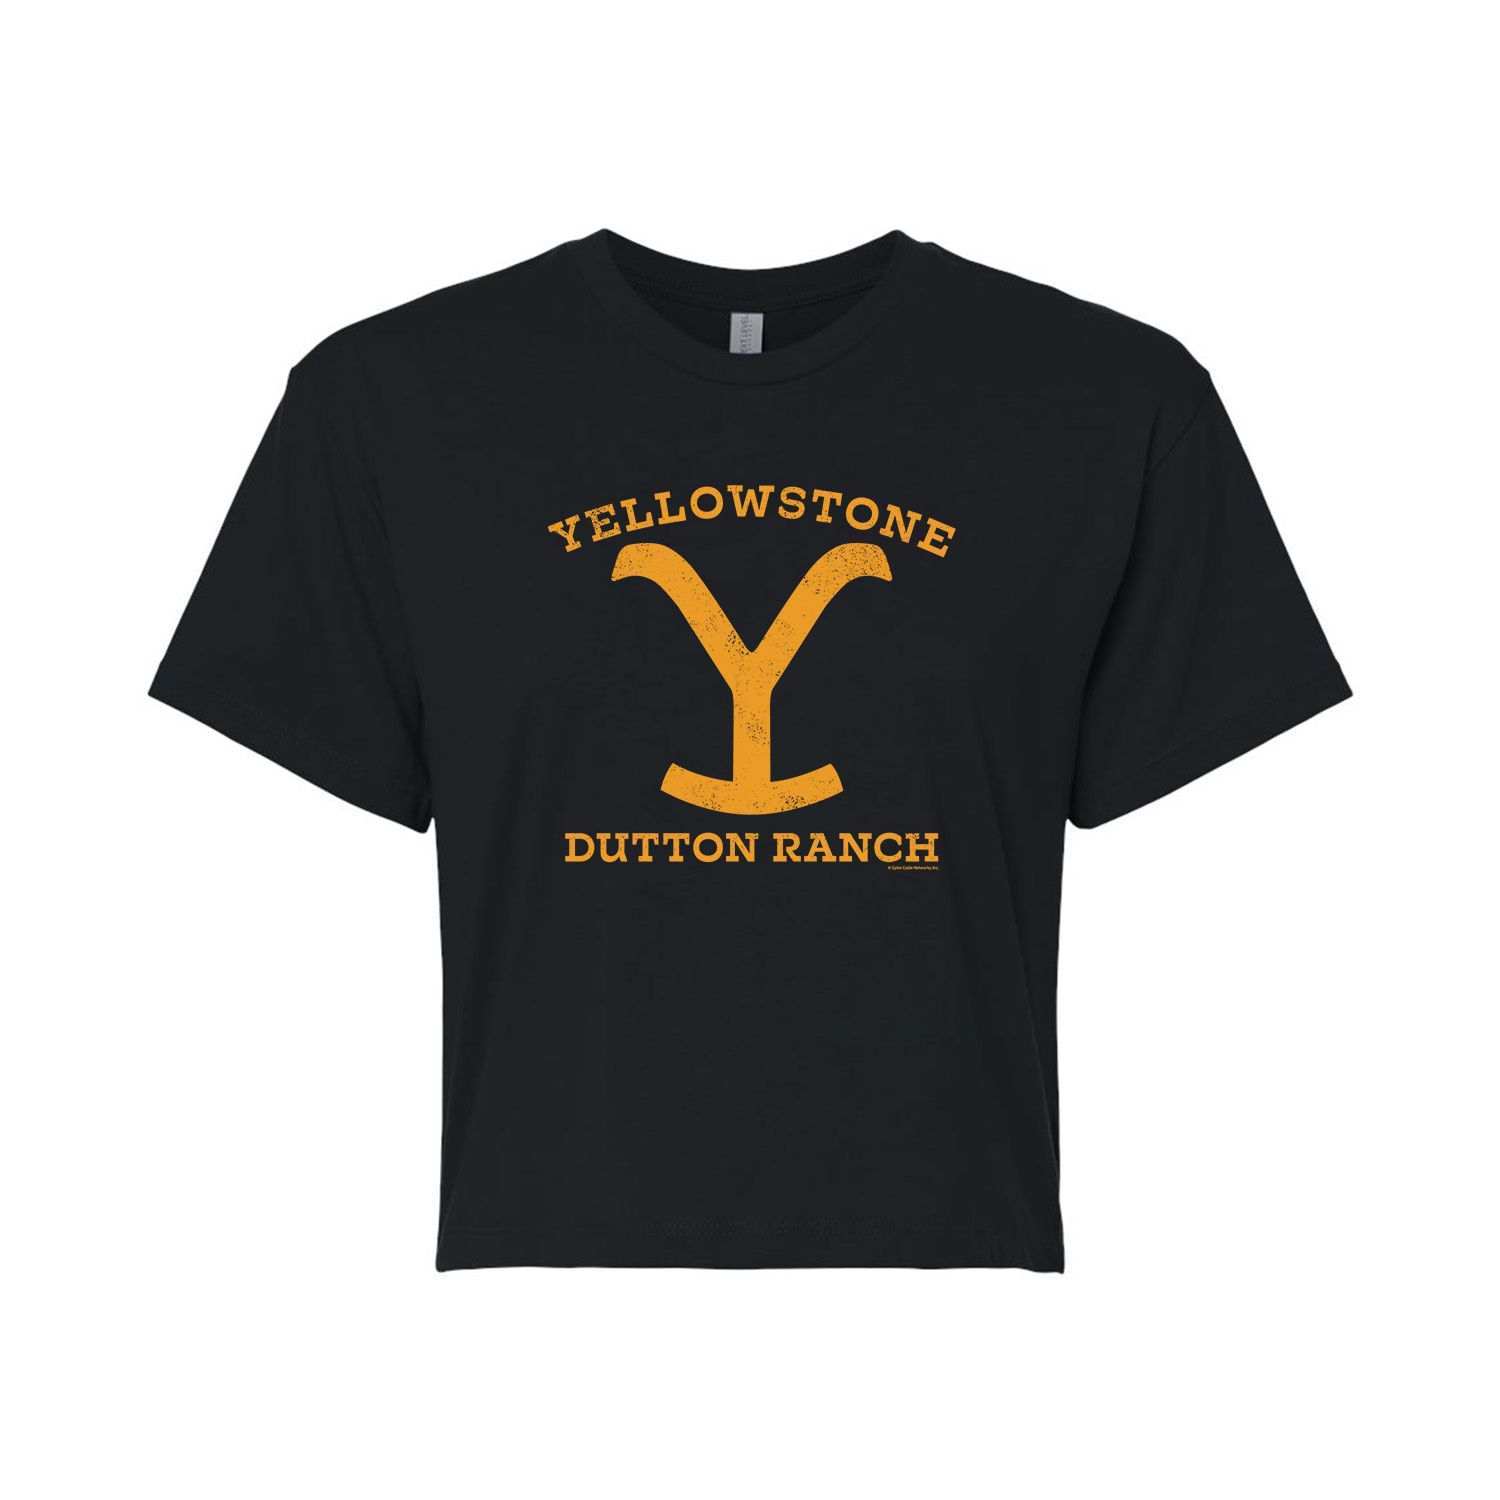 Укороченная футболка желтого цвета Dutton Ranch для юниоров желтого цвета Y Licensed Character